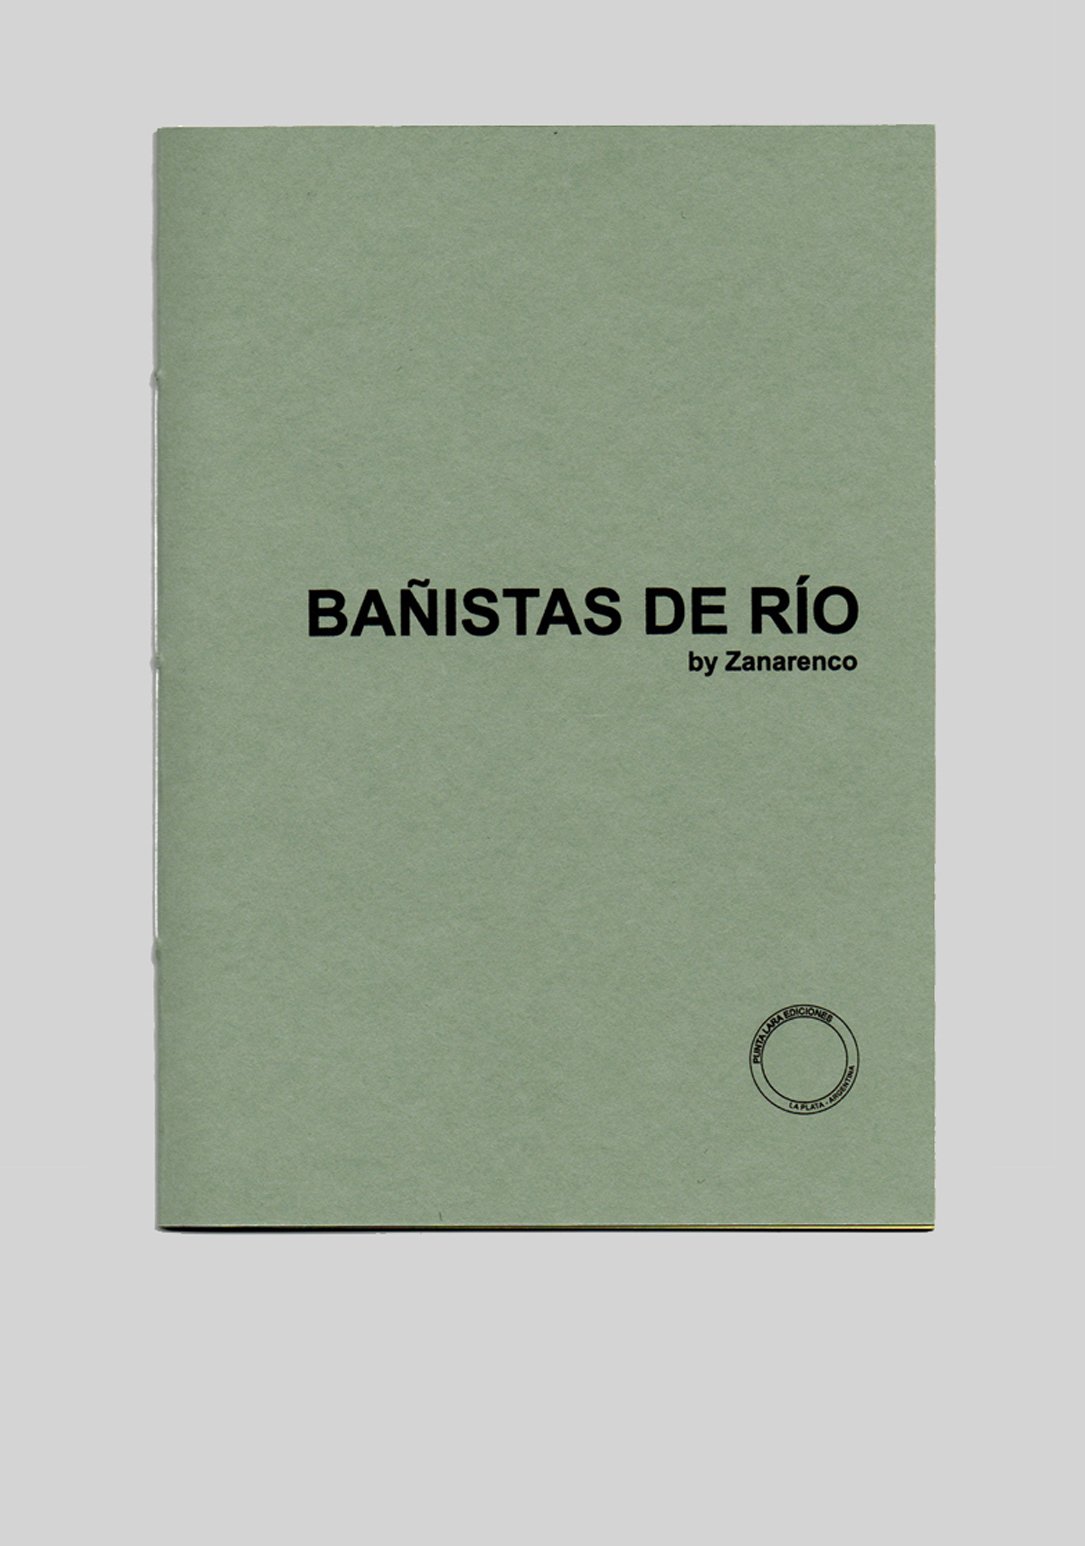 Image of Bañistas de río by Zanarenco